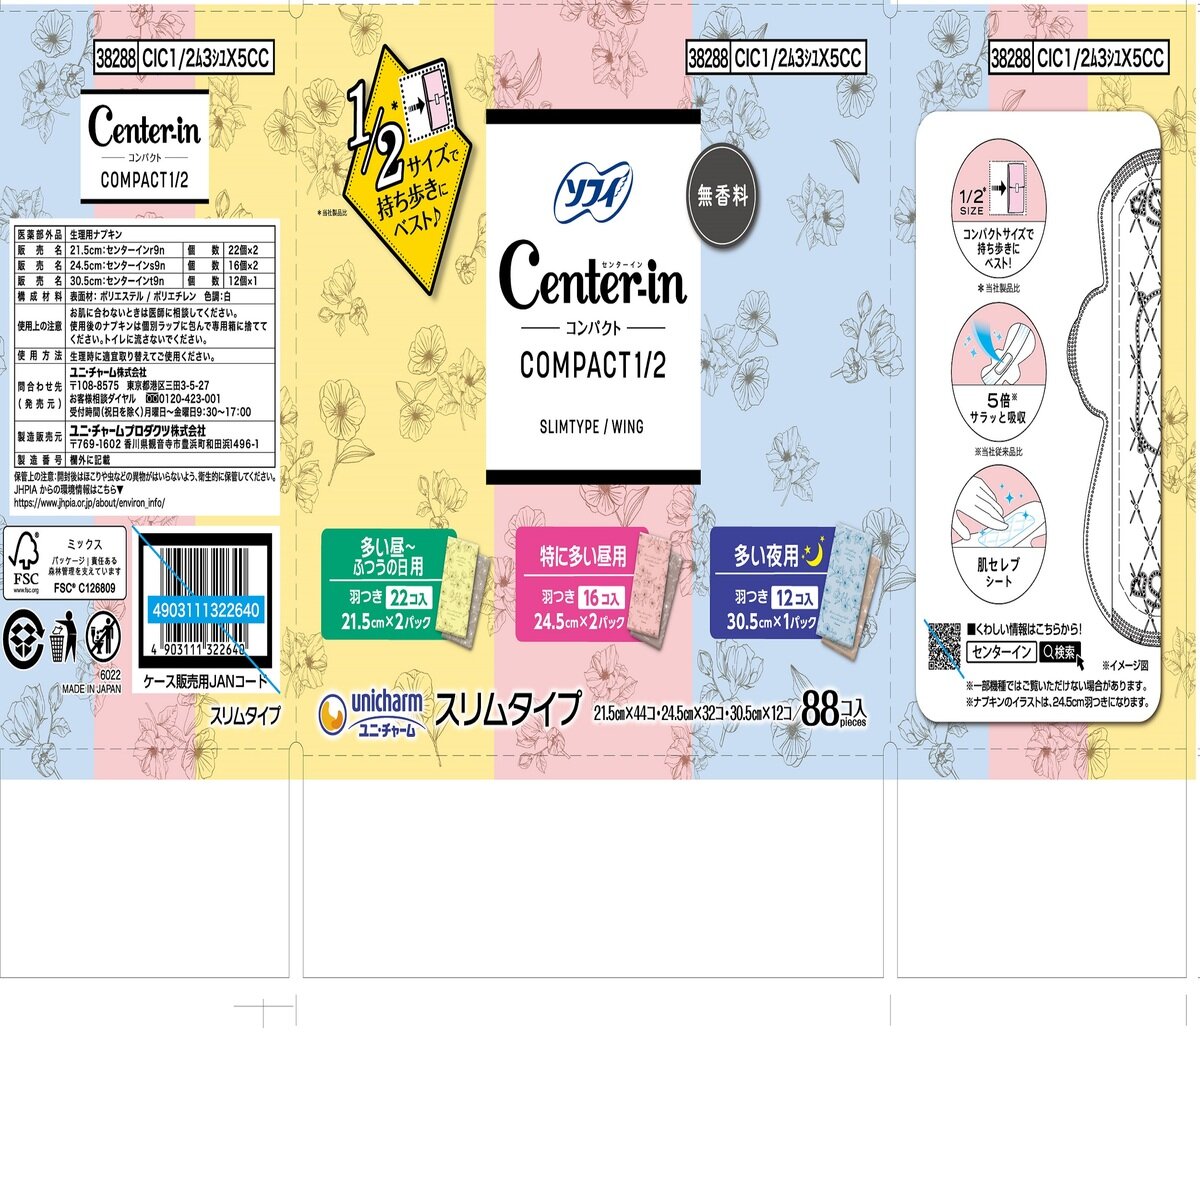 ソフィ センターイン コンパクト1/2 88コ入 | Costco Japan